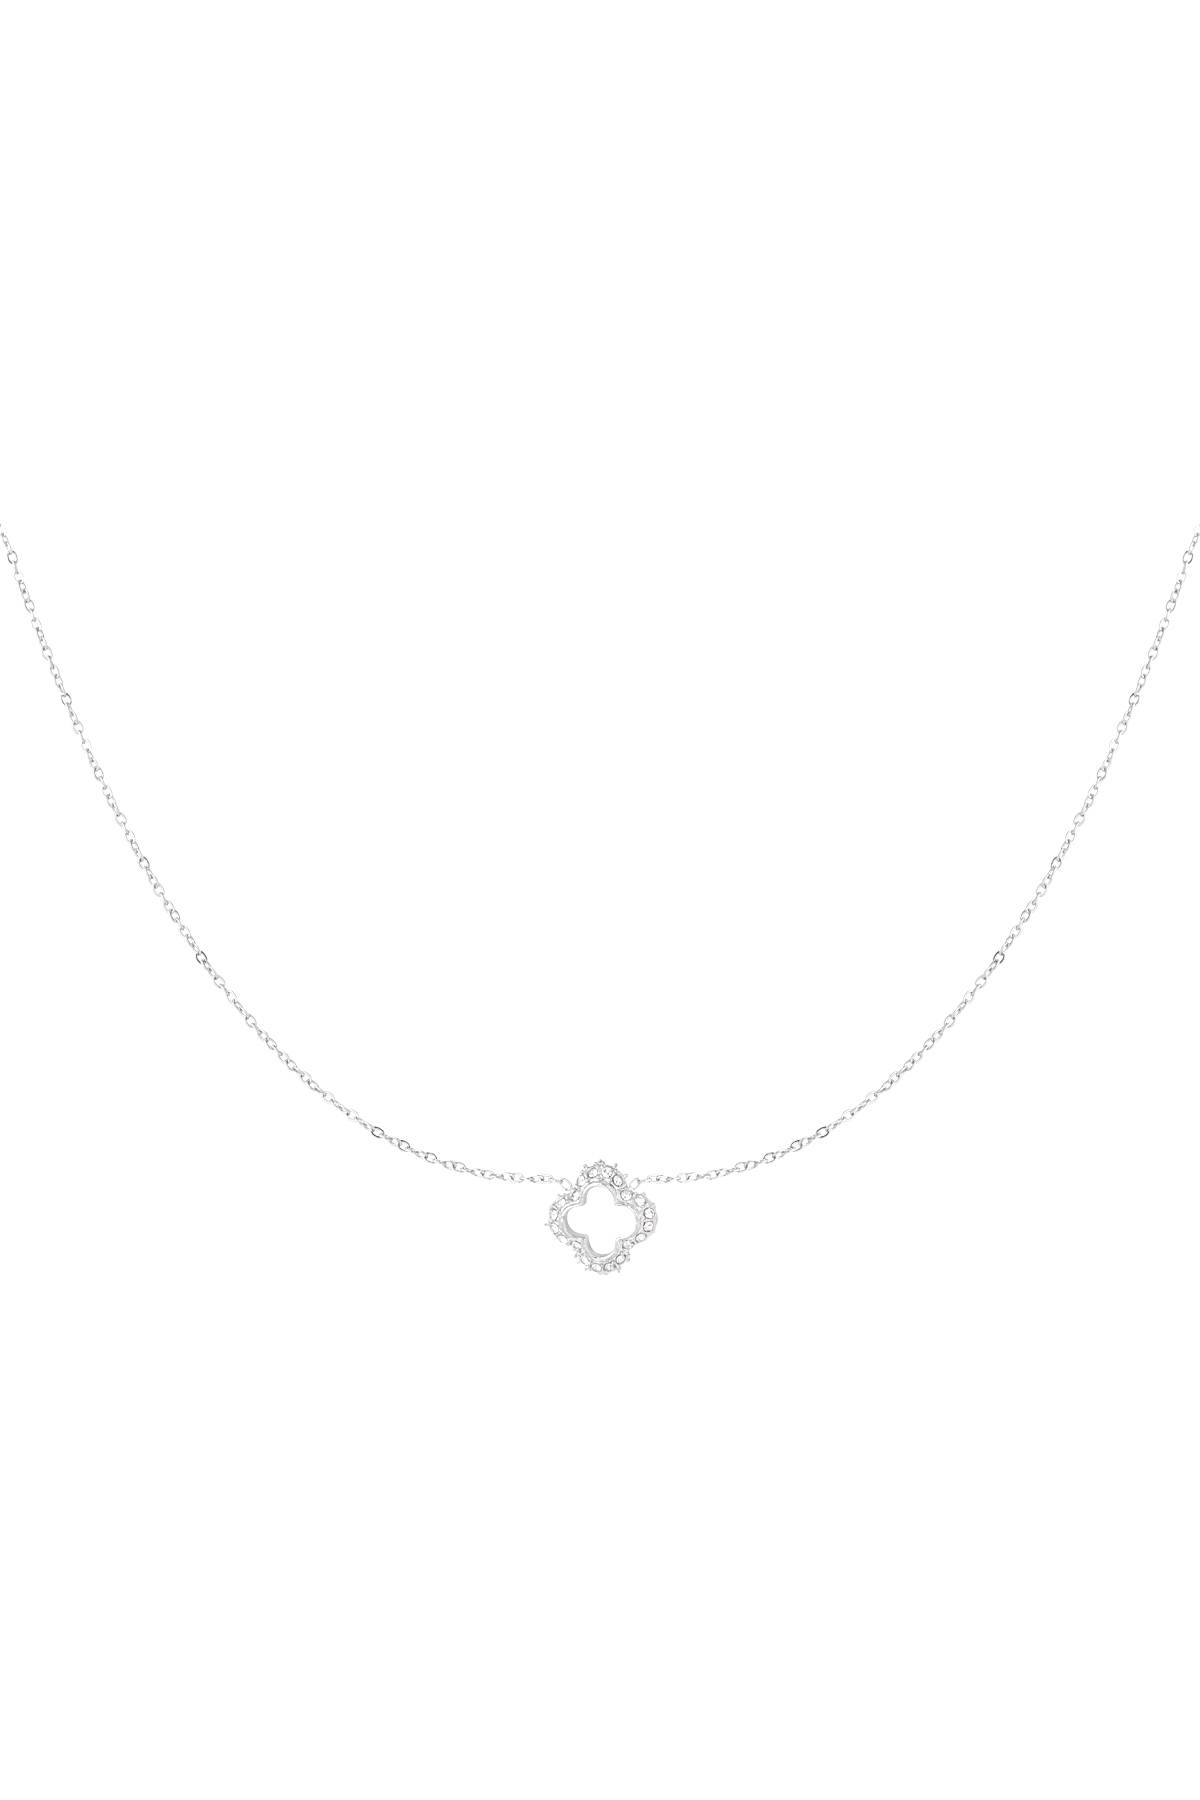 Diamond clover necklace - silver 